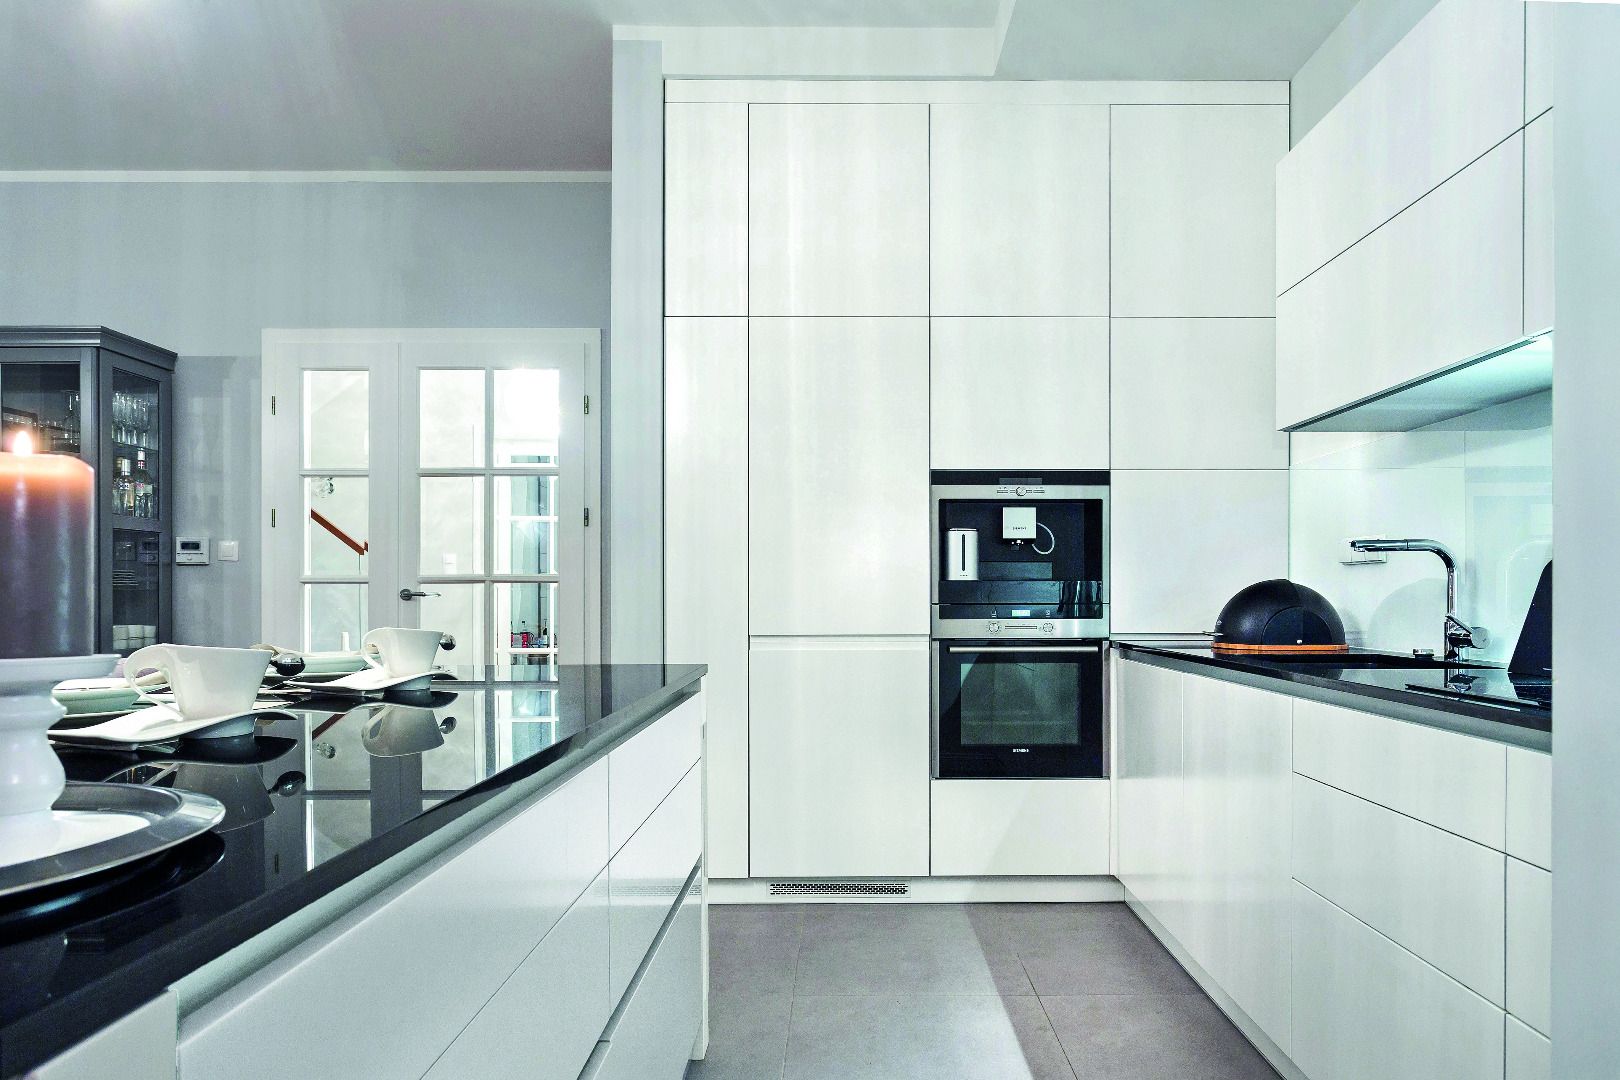 Fronty bezuchwytowe cieszą się ogromną popularnością wśród projektantów przestrzeni kuchennych. Są bardzo praktyczne, wygodne i pomagają zadbać o czystość podczas kuchennych eksperymentów.  Fot. Studio Wach/Max Kuchnie 